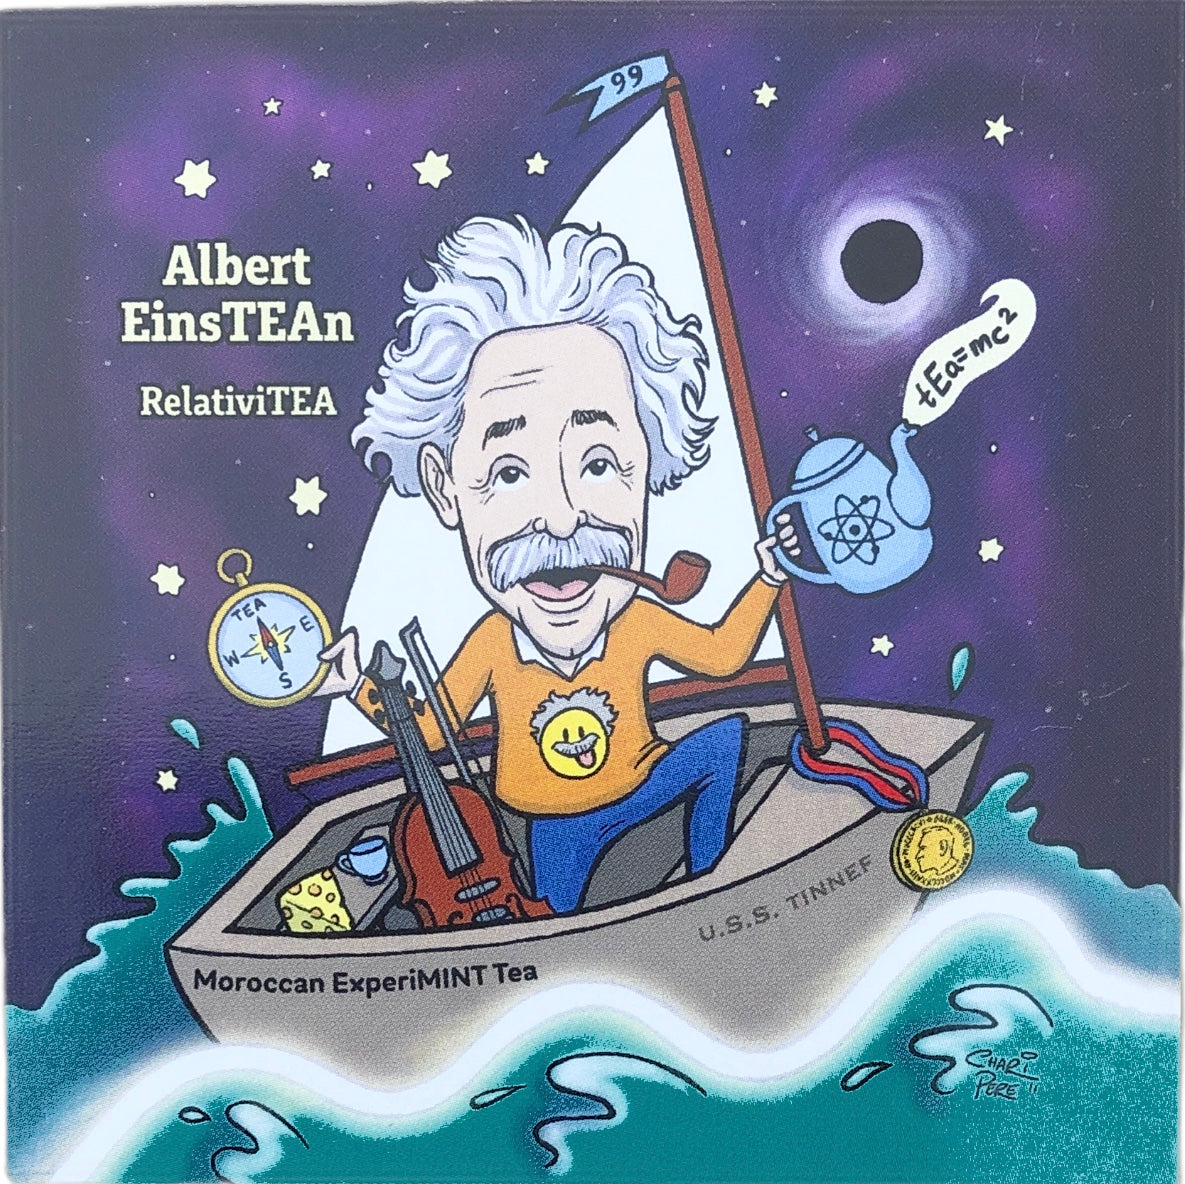 Albert EinsTEAn (magnet) (Albert Einstein)